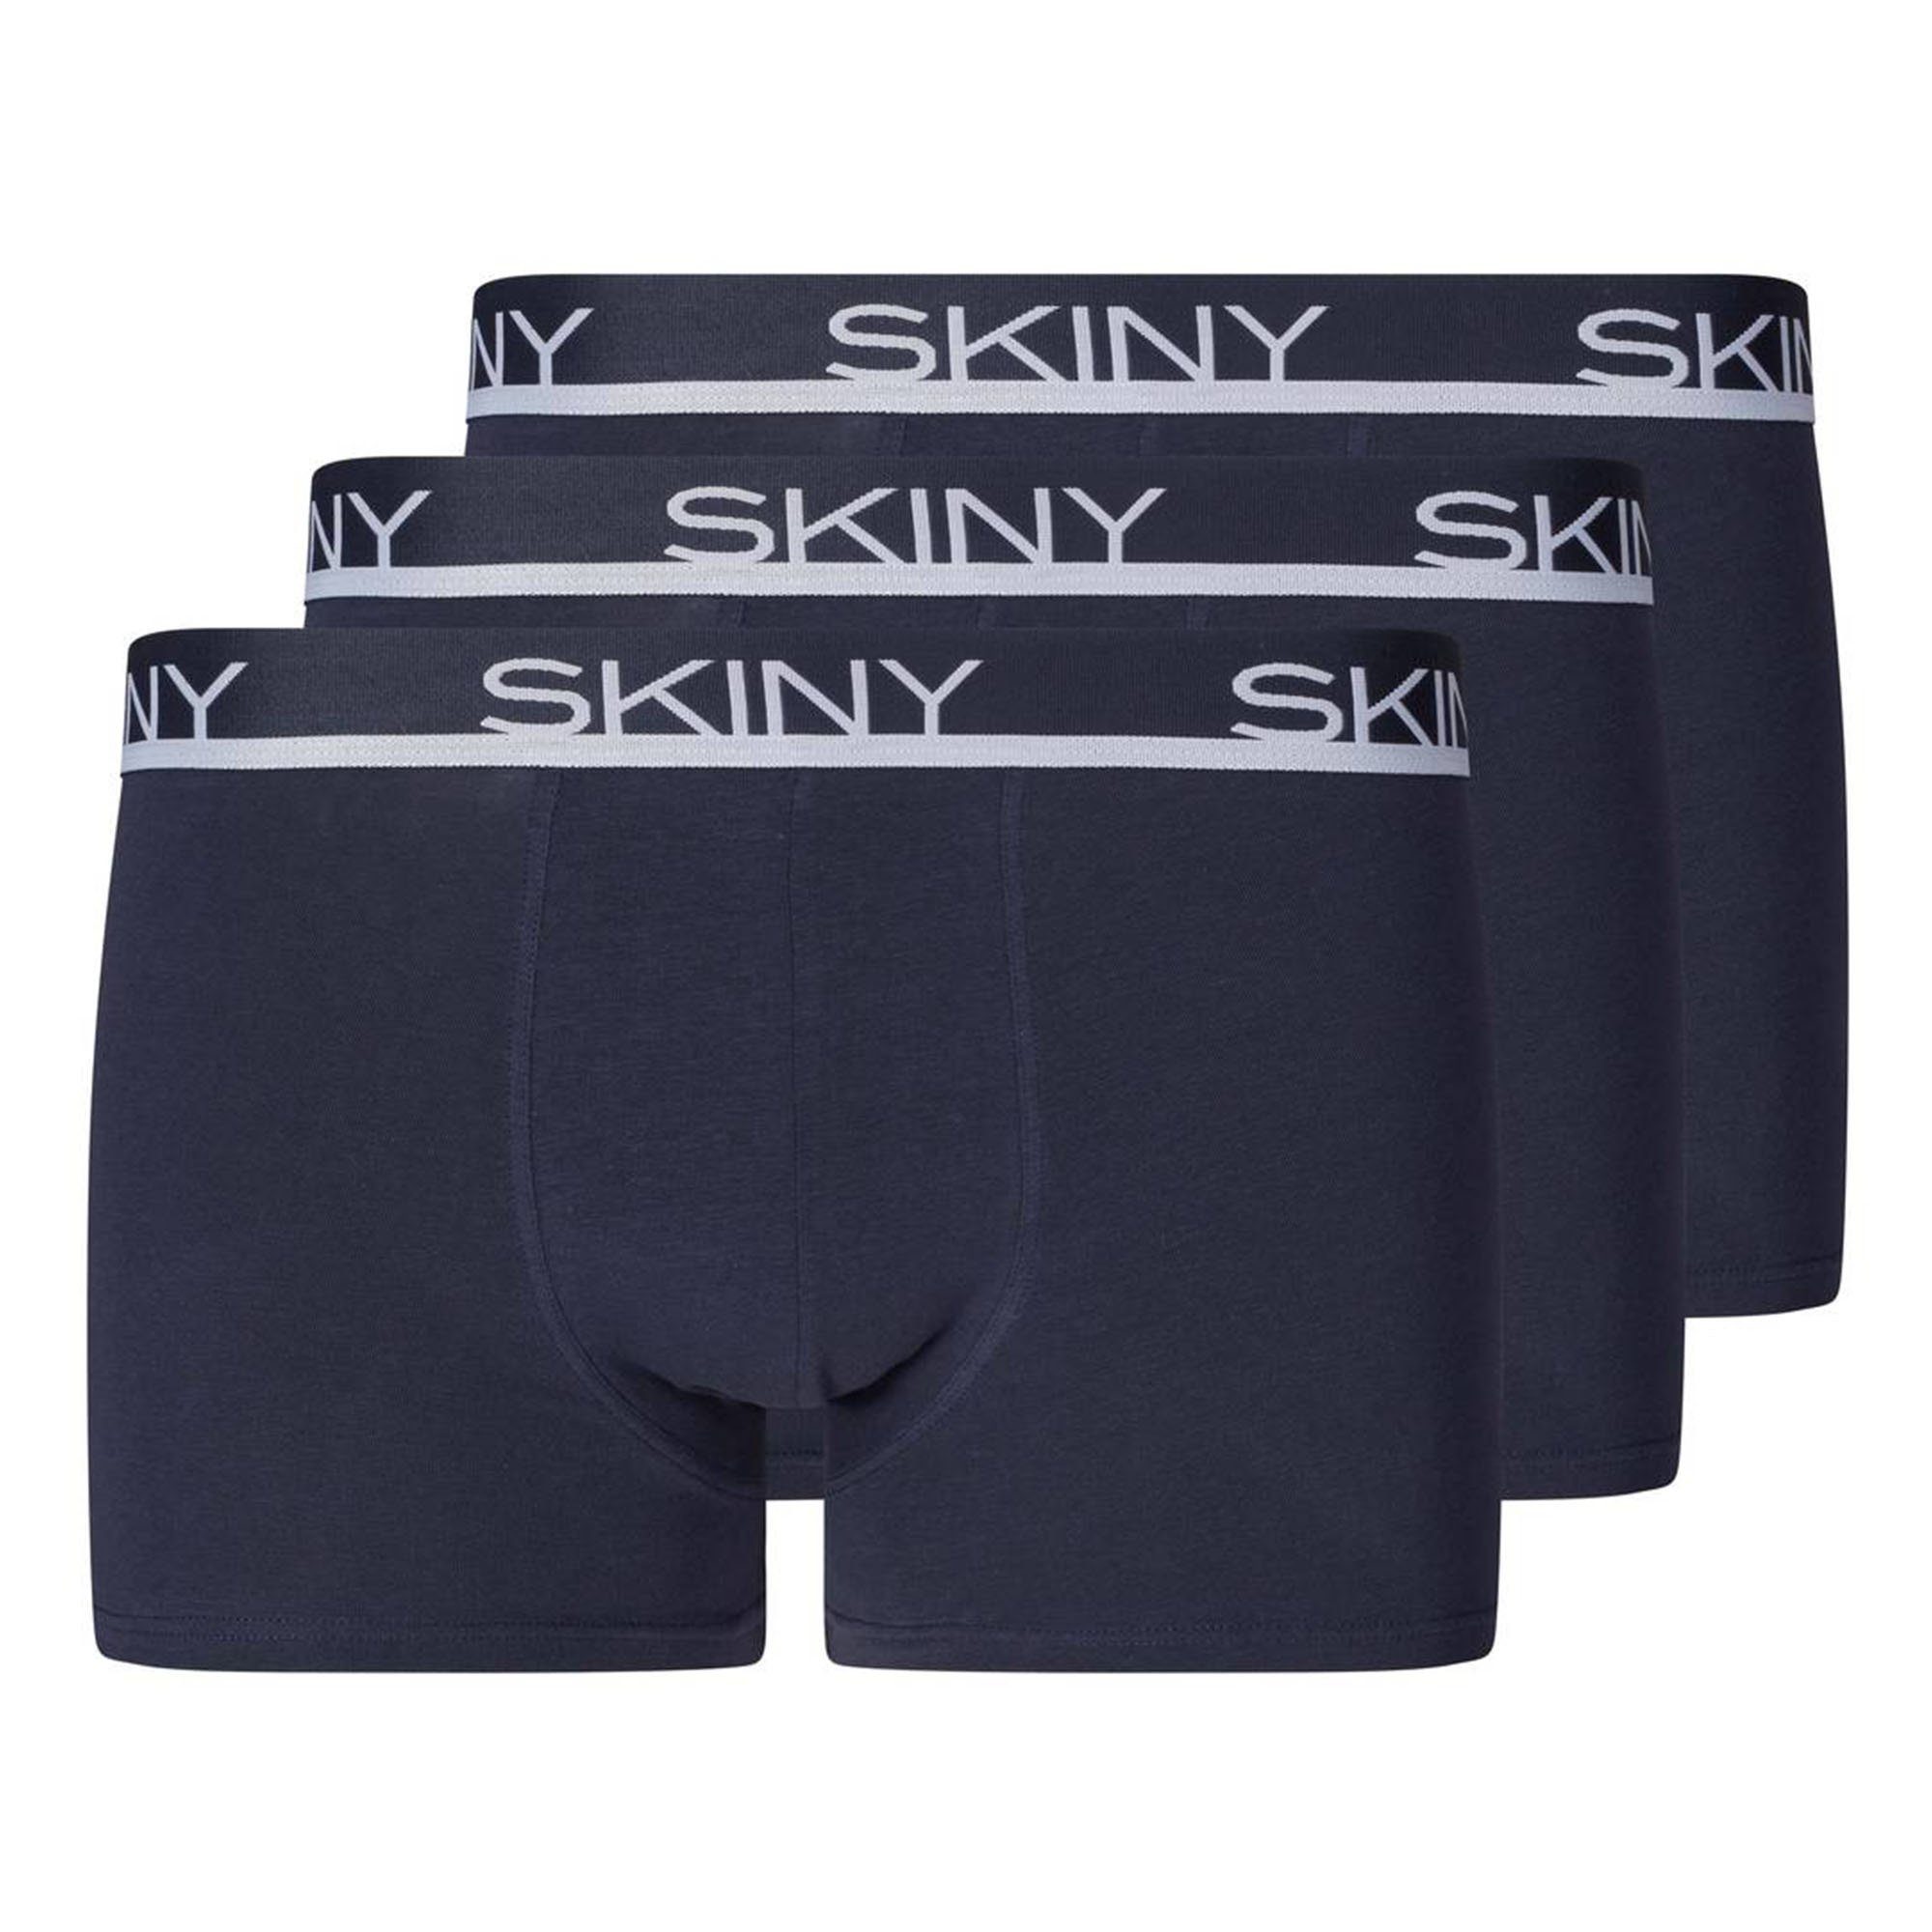 Skiny Boxer Herren Boxer Shorts 3er Pack - Trunks, Pants Marine